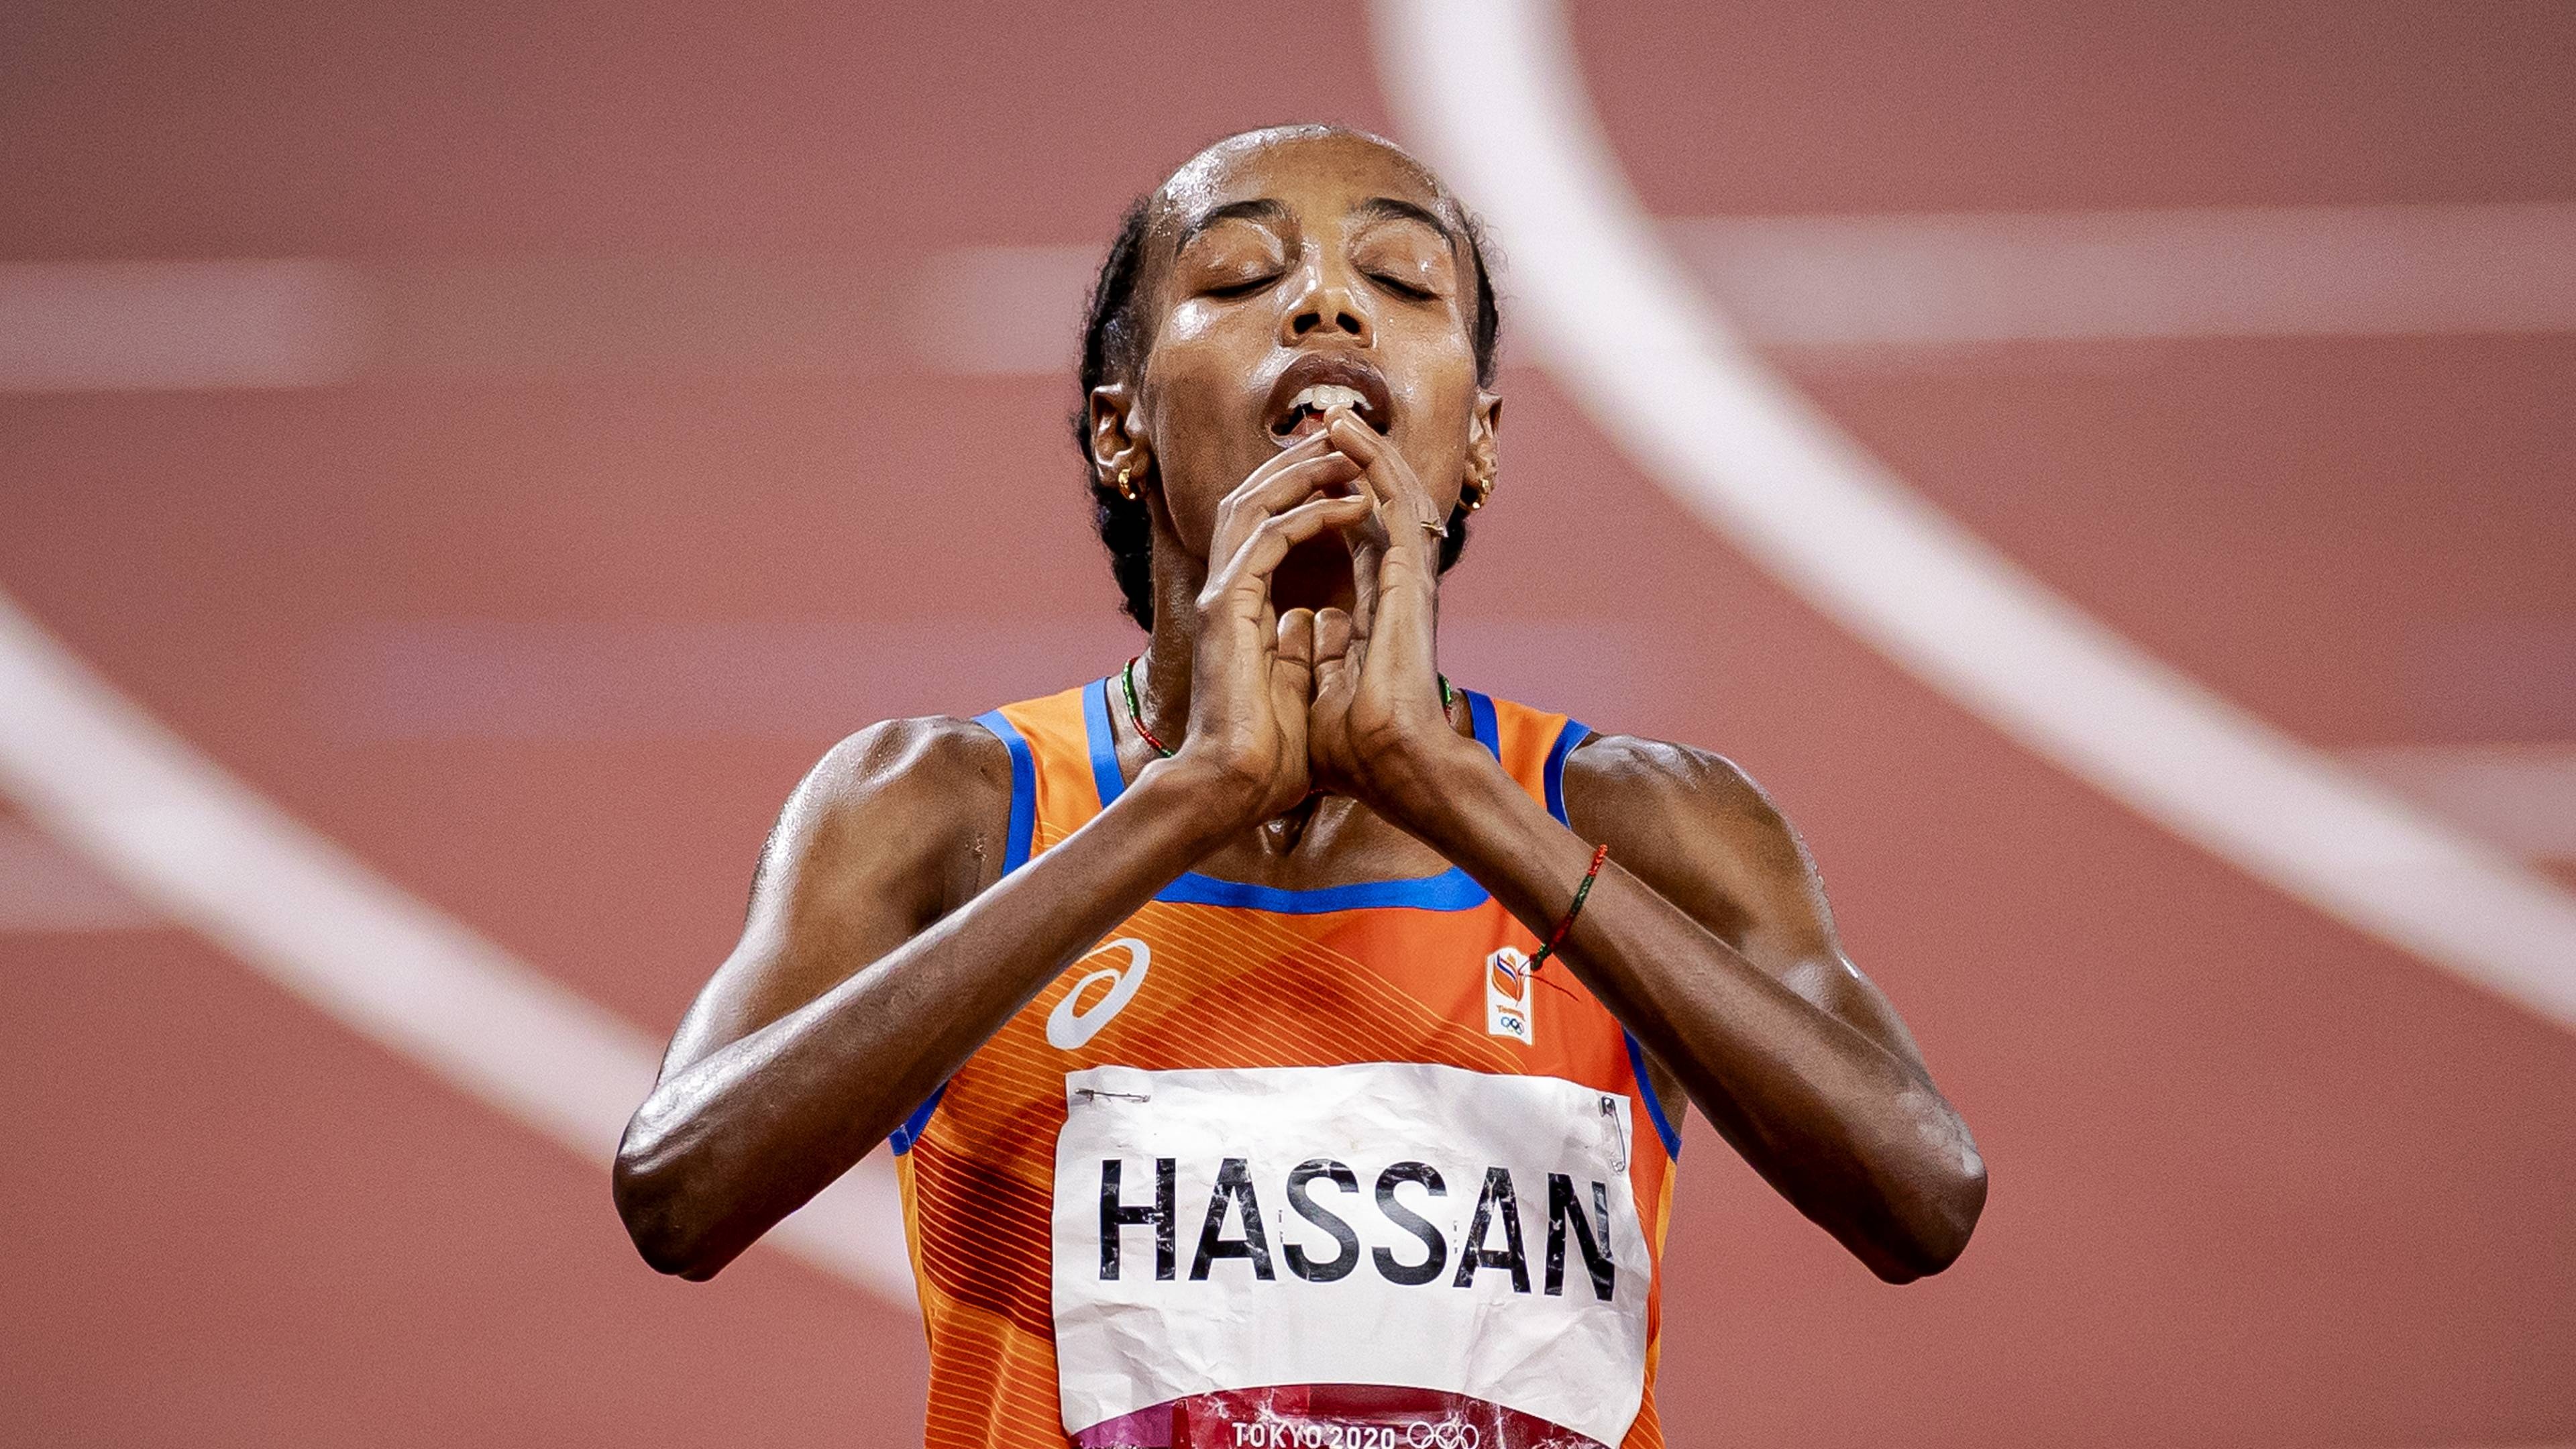 Sifan Hassan, Tokyo's Athletics Queen, 3840x2160 4K Desktop